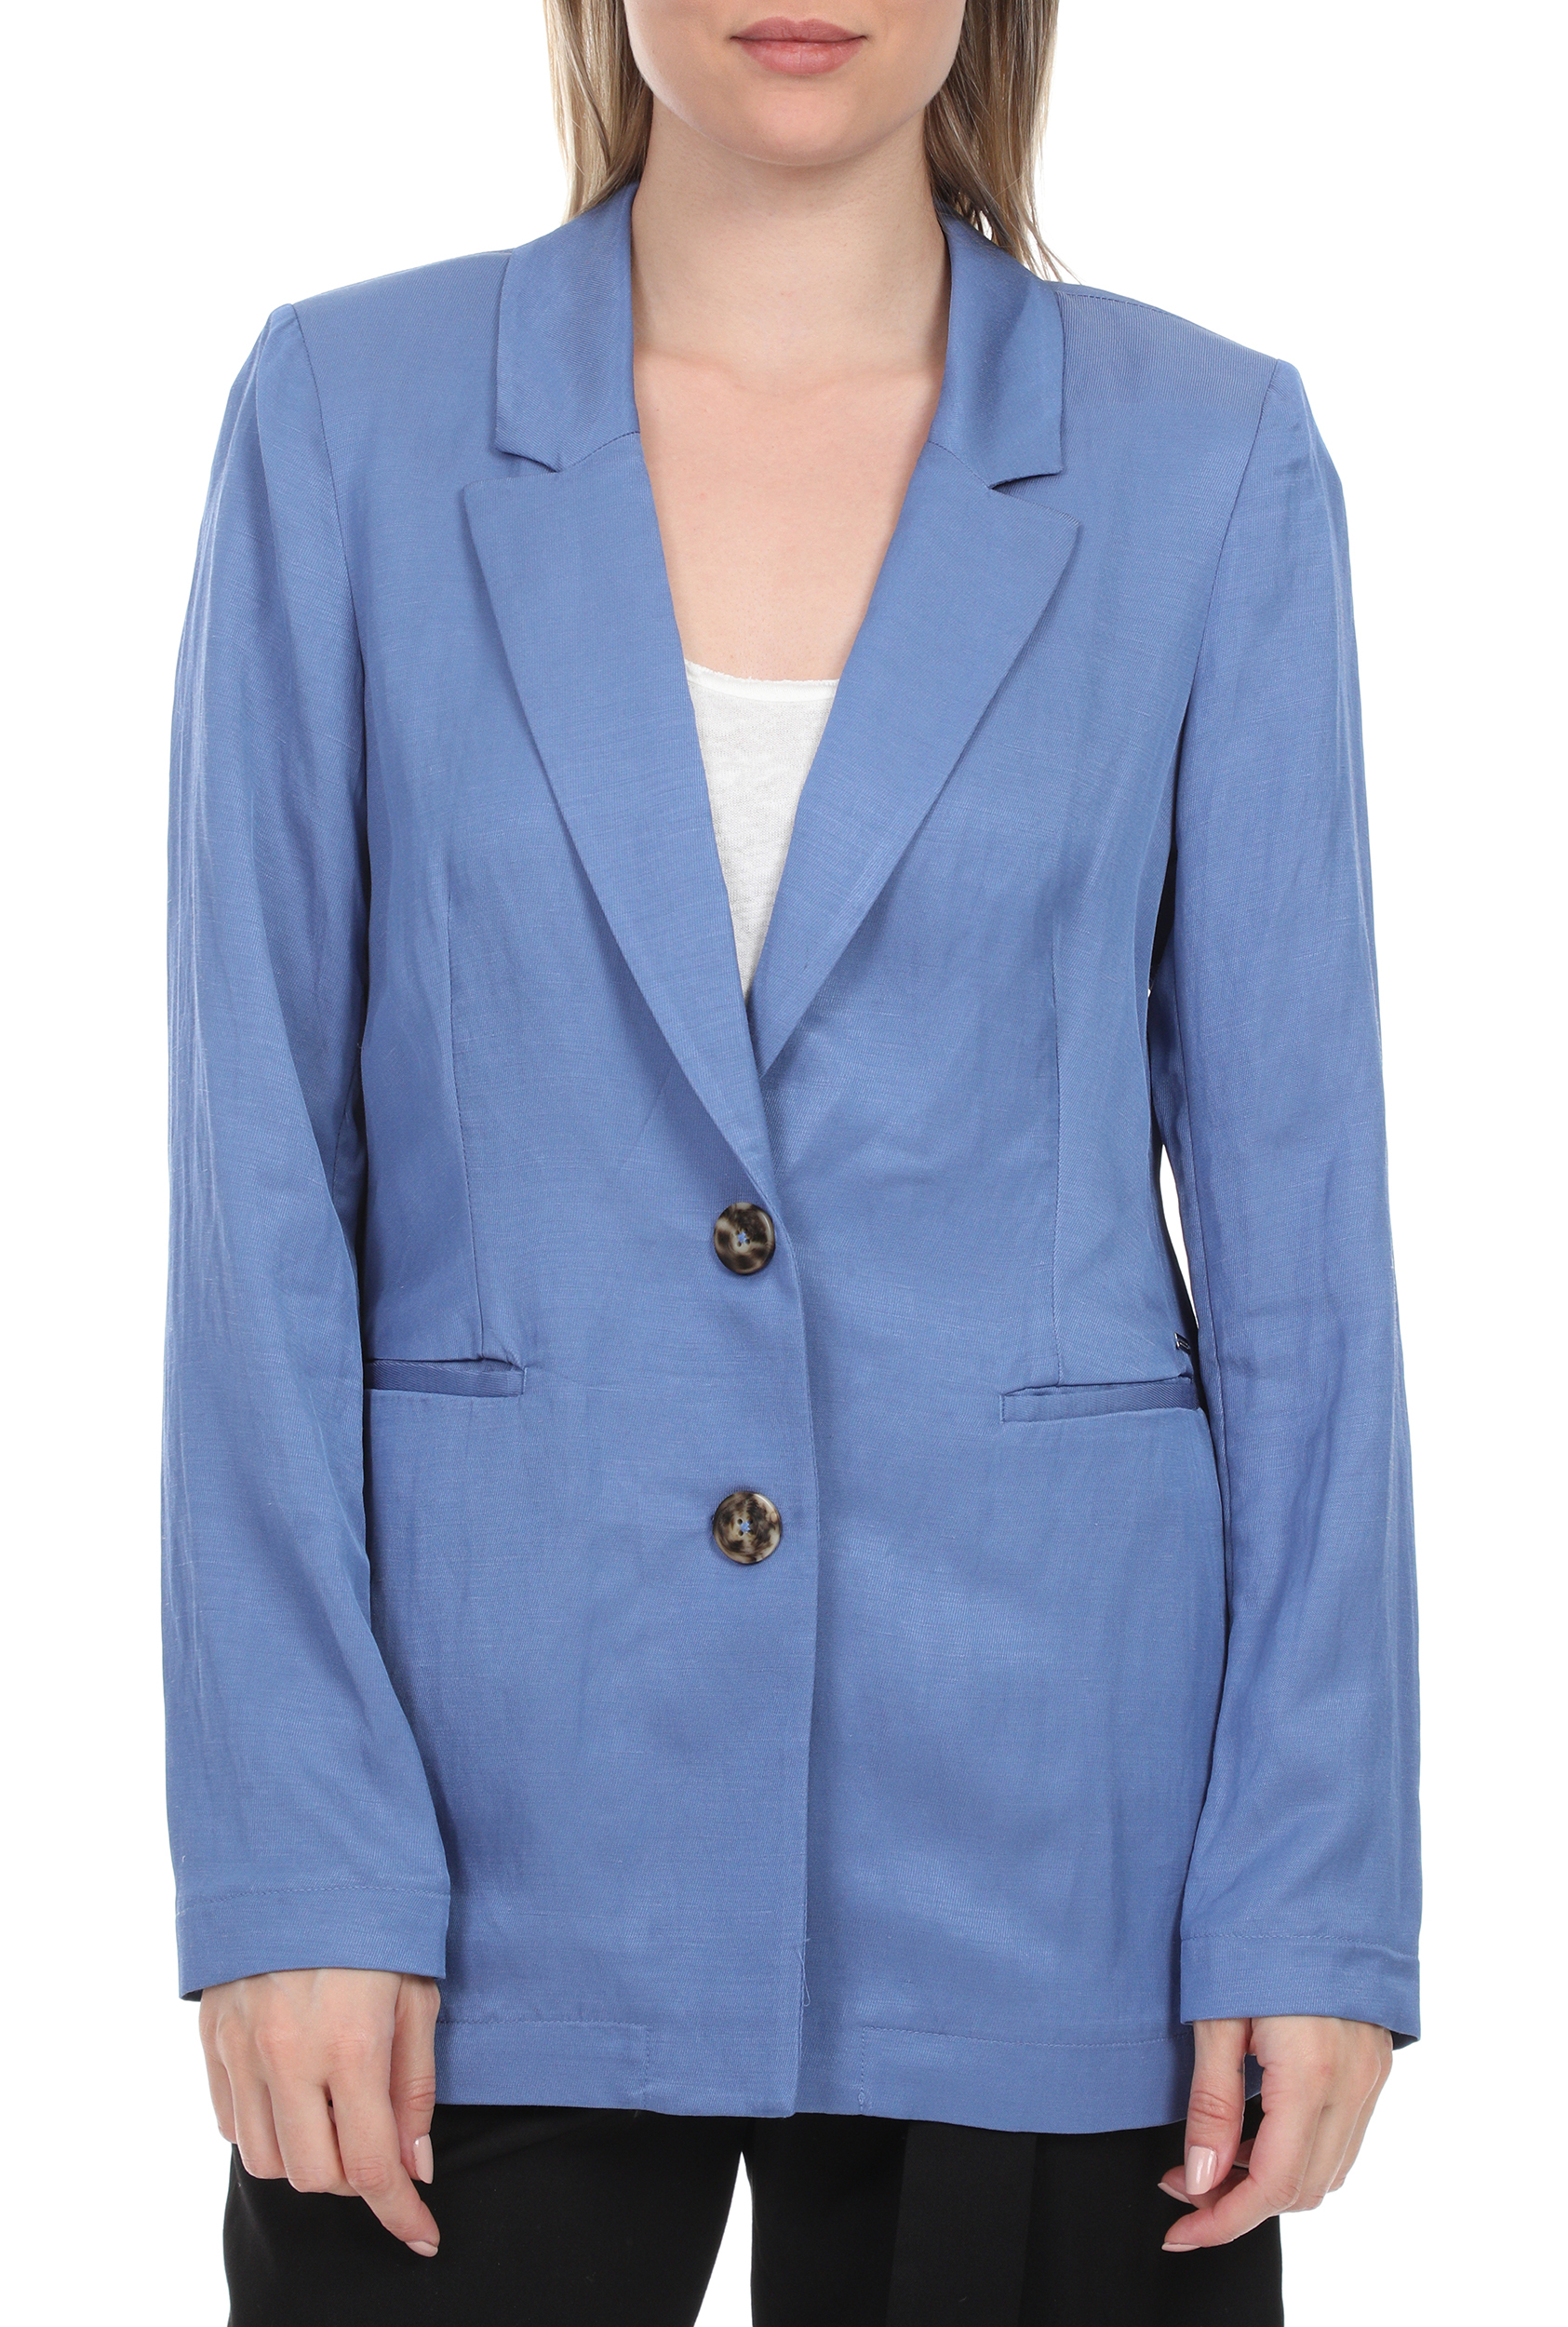 Γυναικεία/Ρούχα/Πανωφόρια/Σακάκια SCOTCH & SODA - Γυναικείο σακάκι blazer SCOTCH & SODA μπλε